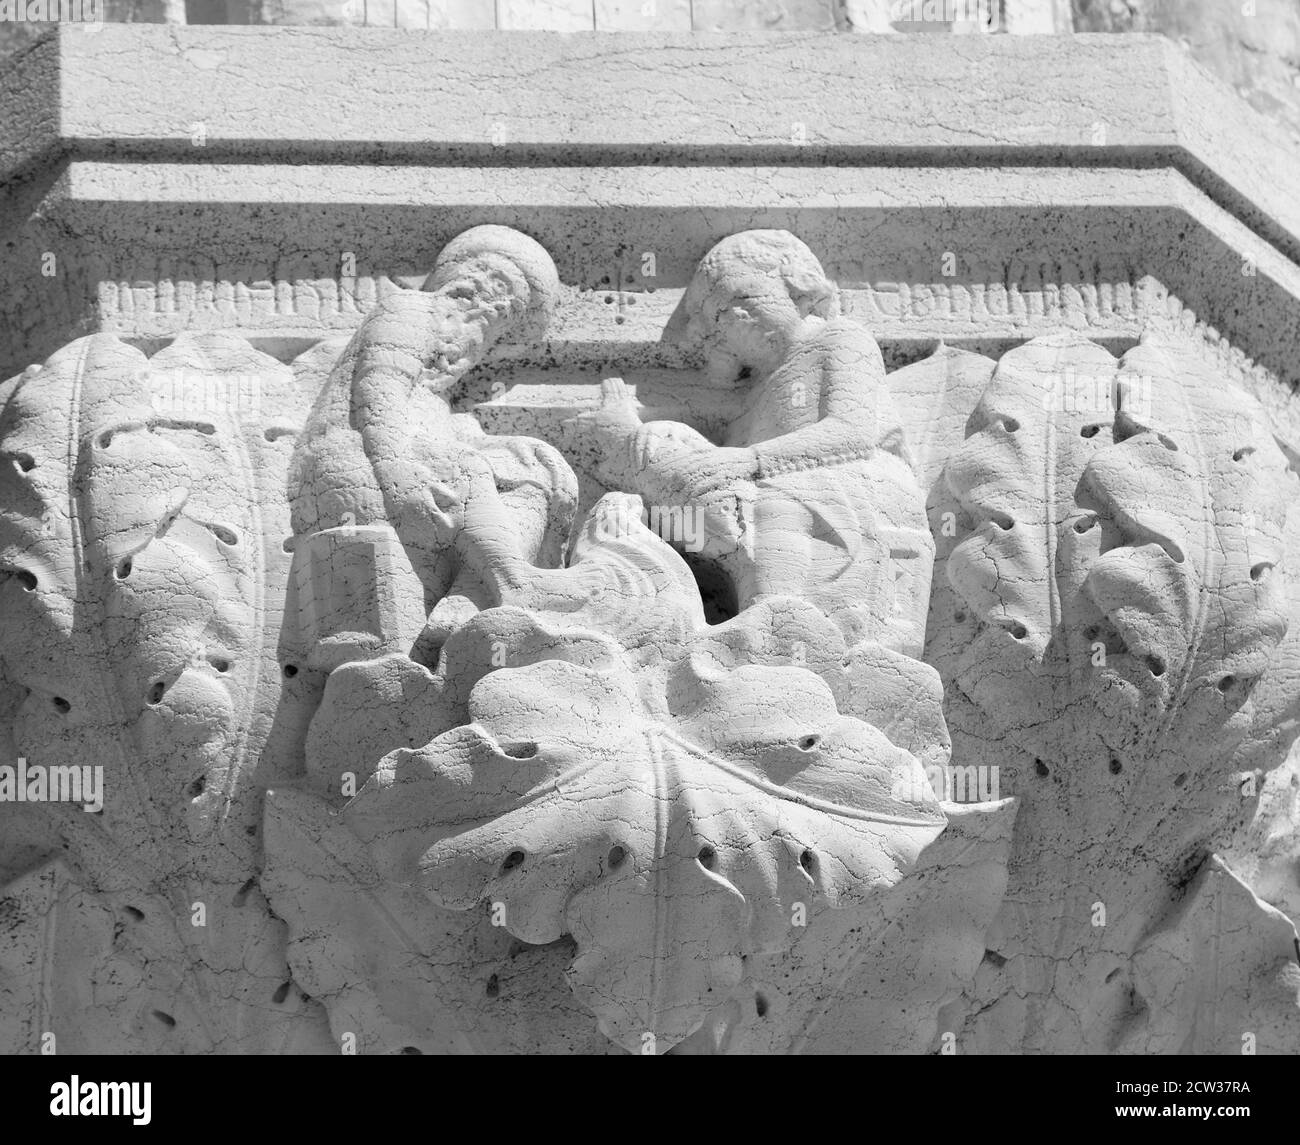 Venezia, VE, Italia - 13 luglio 2020: Antica decorazione scolpita in pietra con la rappresentazione di due persone umane nel Palazzo Ducale chiamato anche Pal Foto Stock